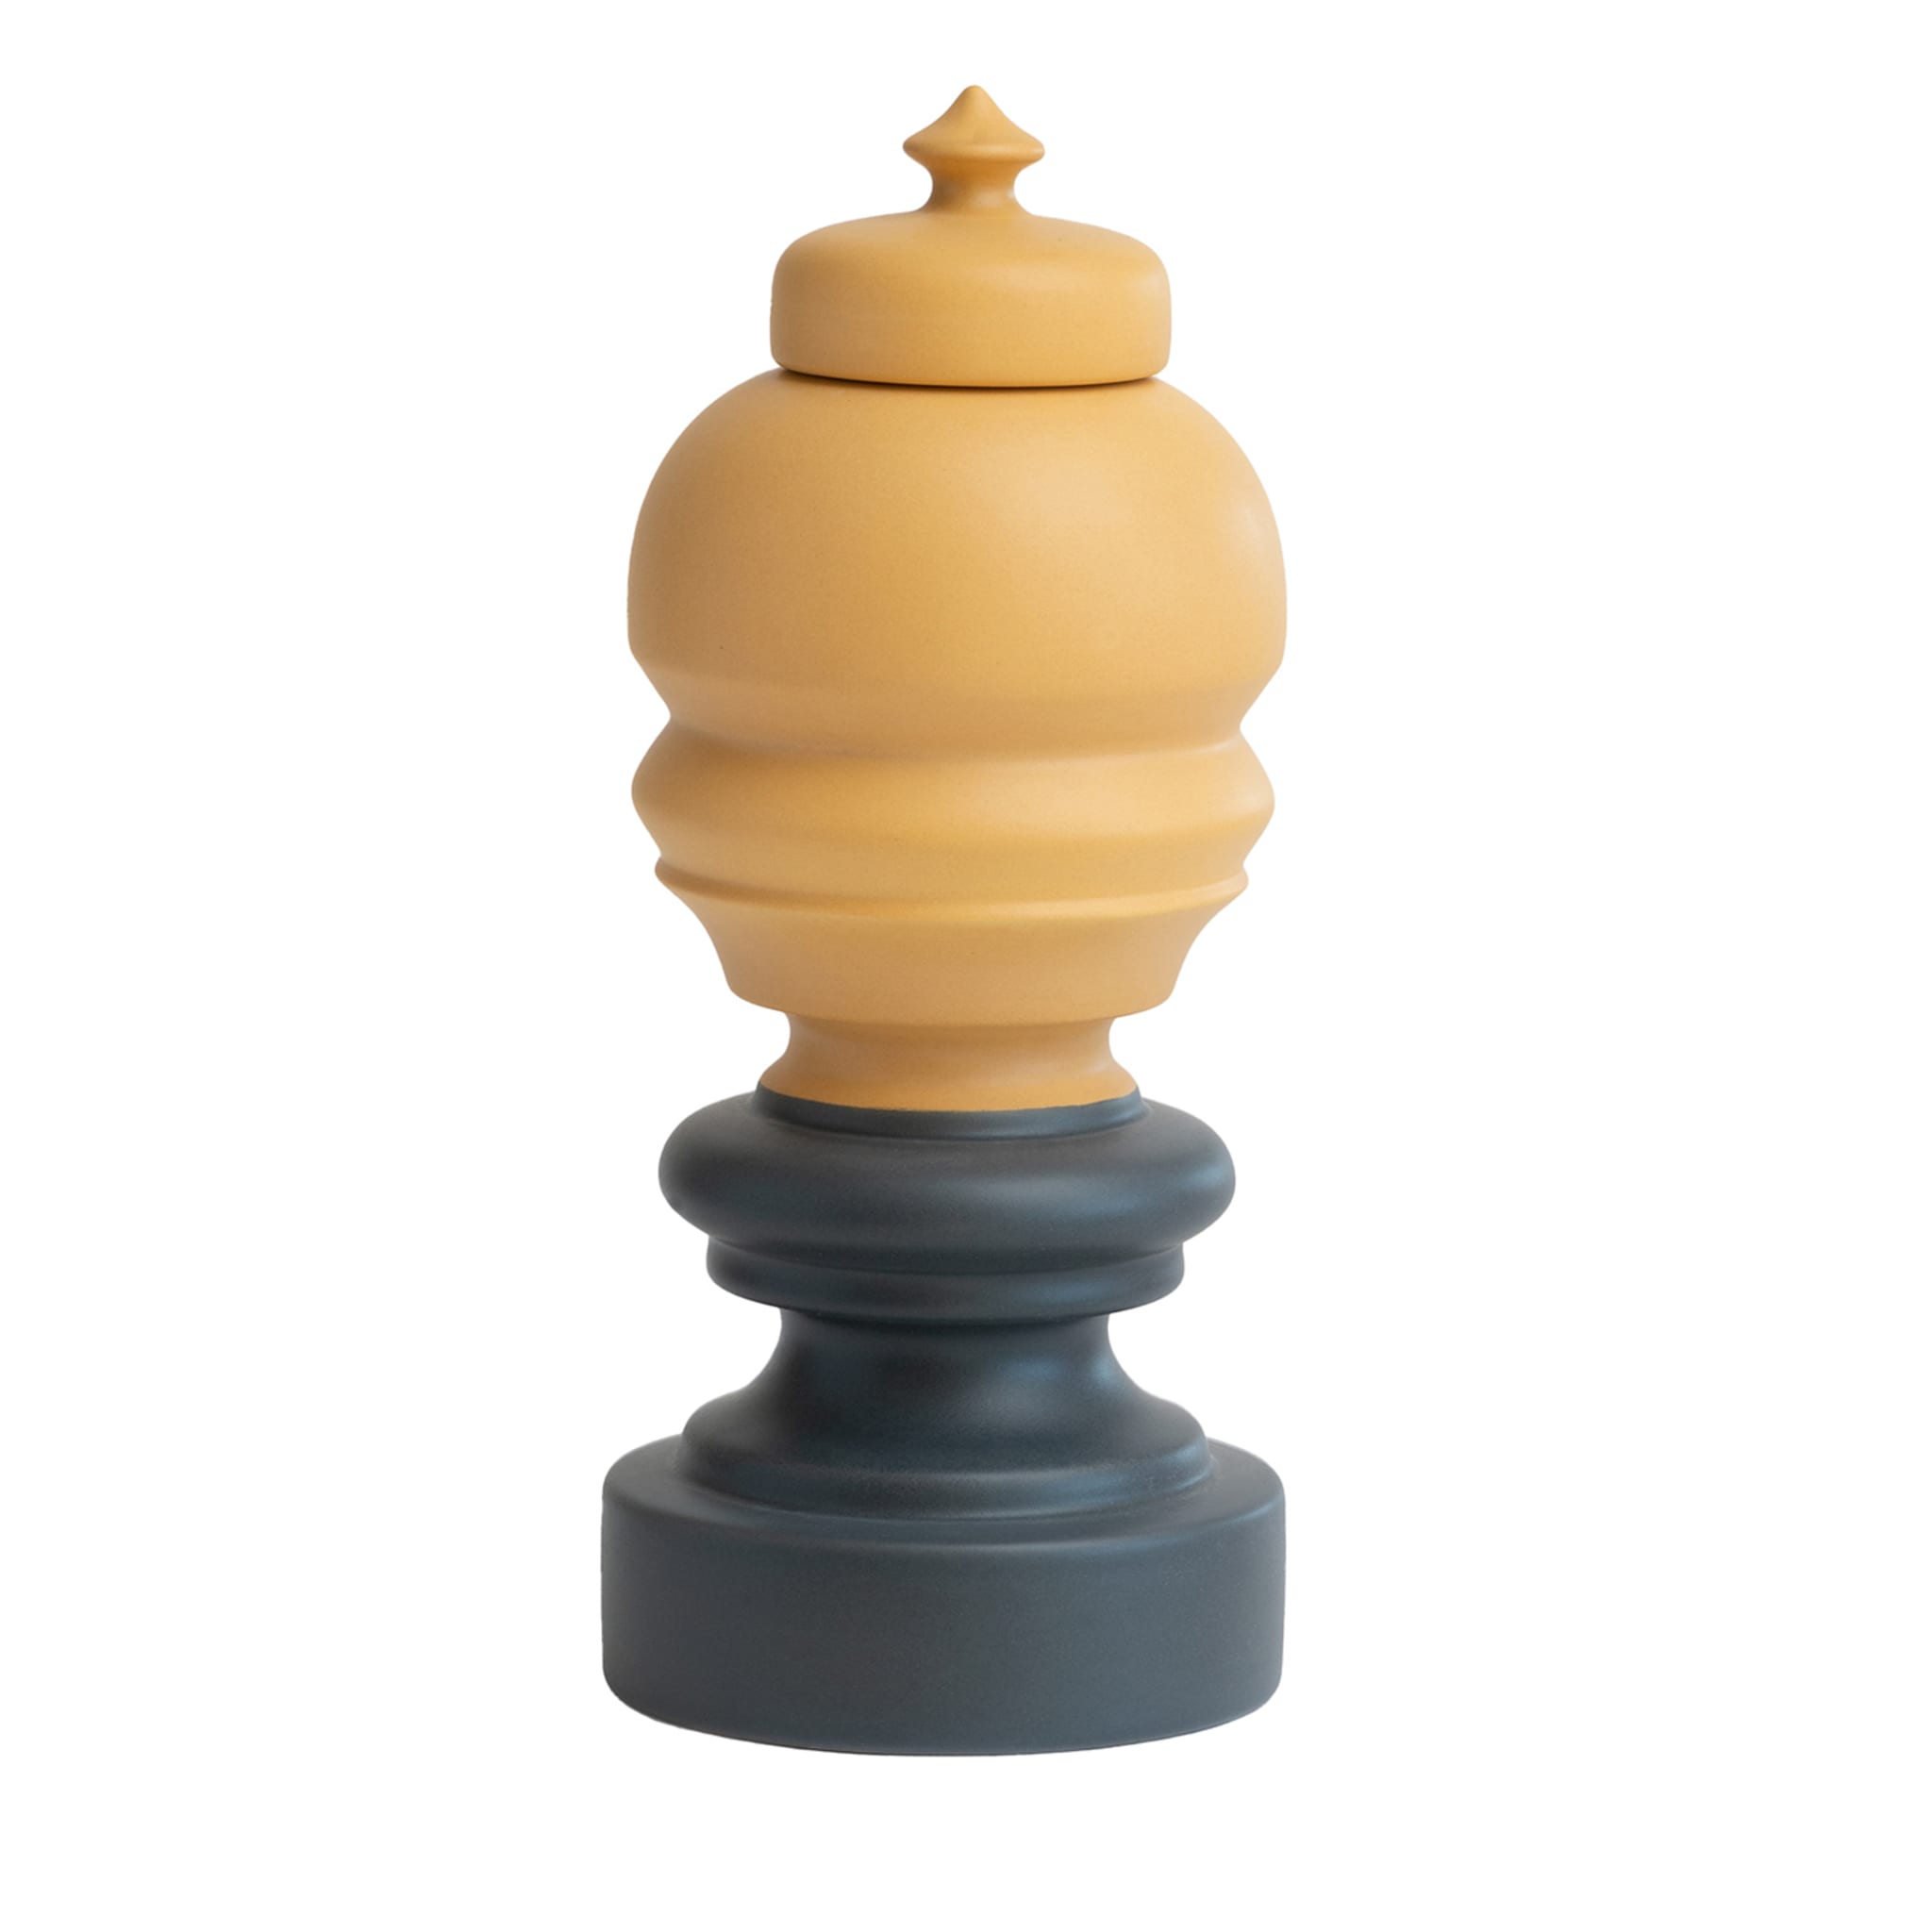 Regina Gray and Yellow Chess Statuette - Main view